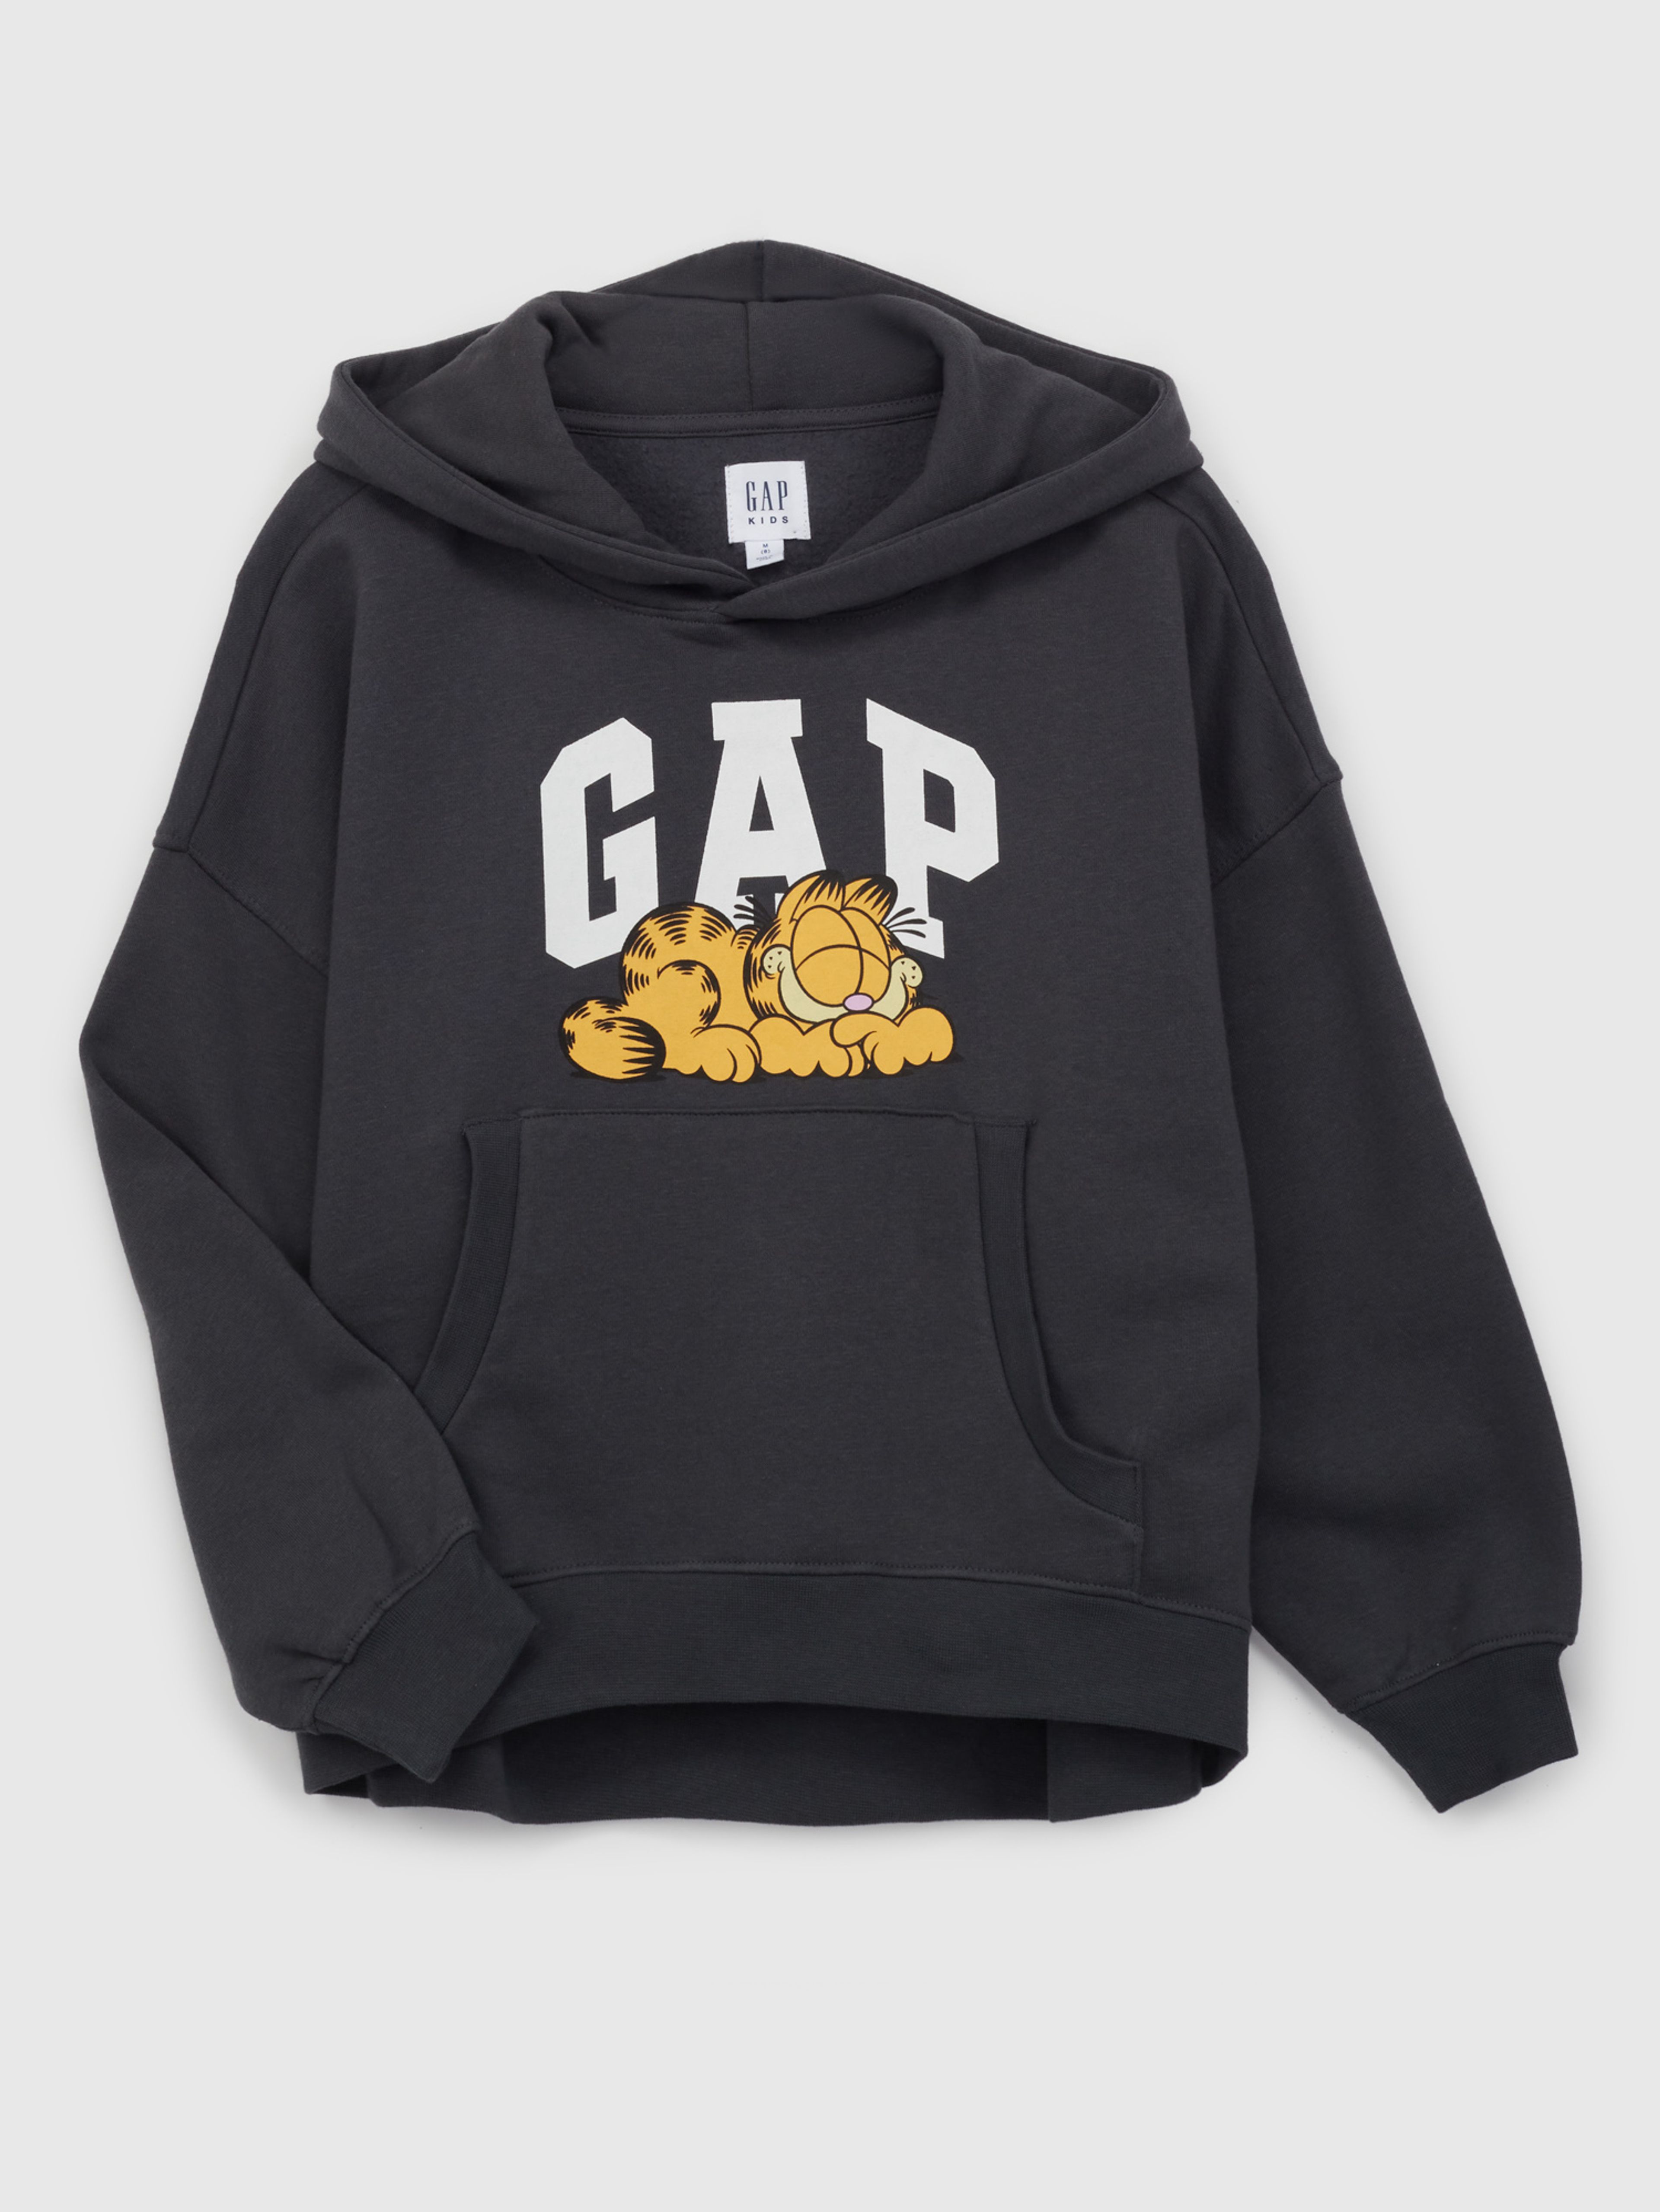 Dziecięca bluza z logo GAP i Garfield